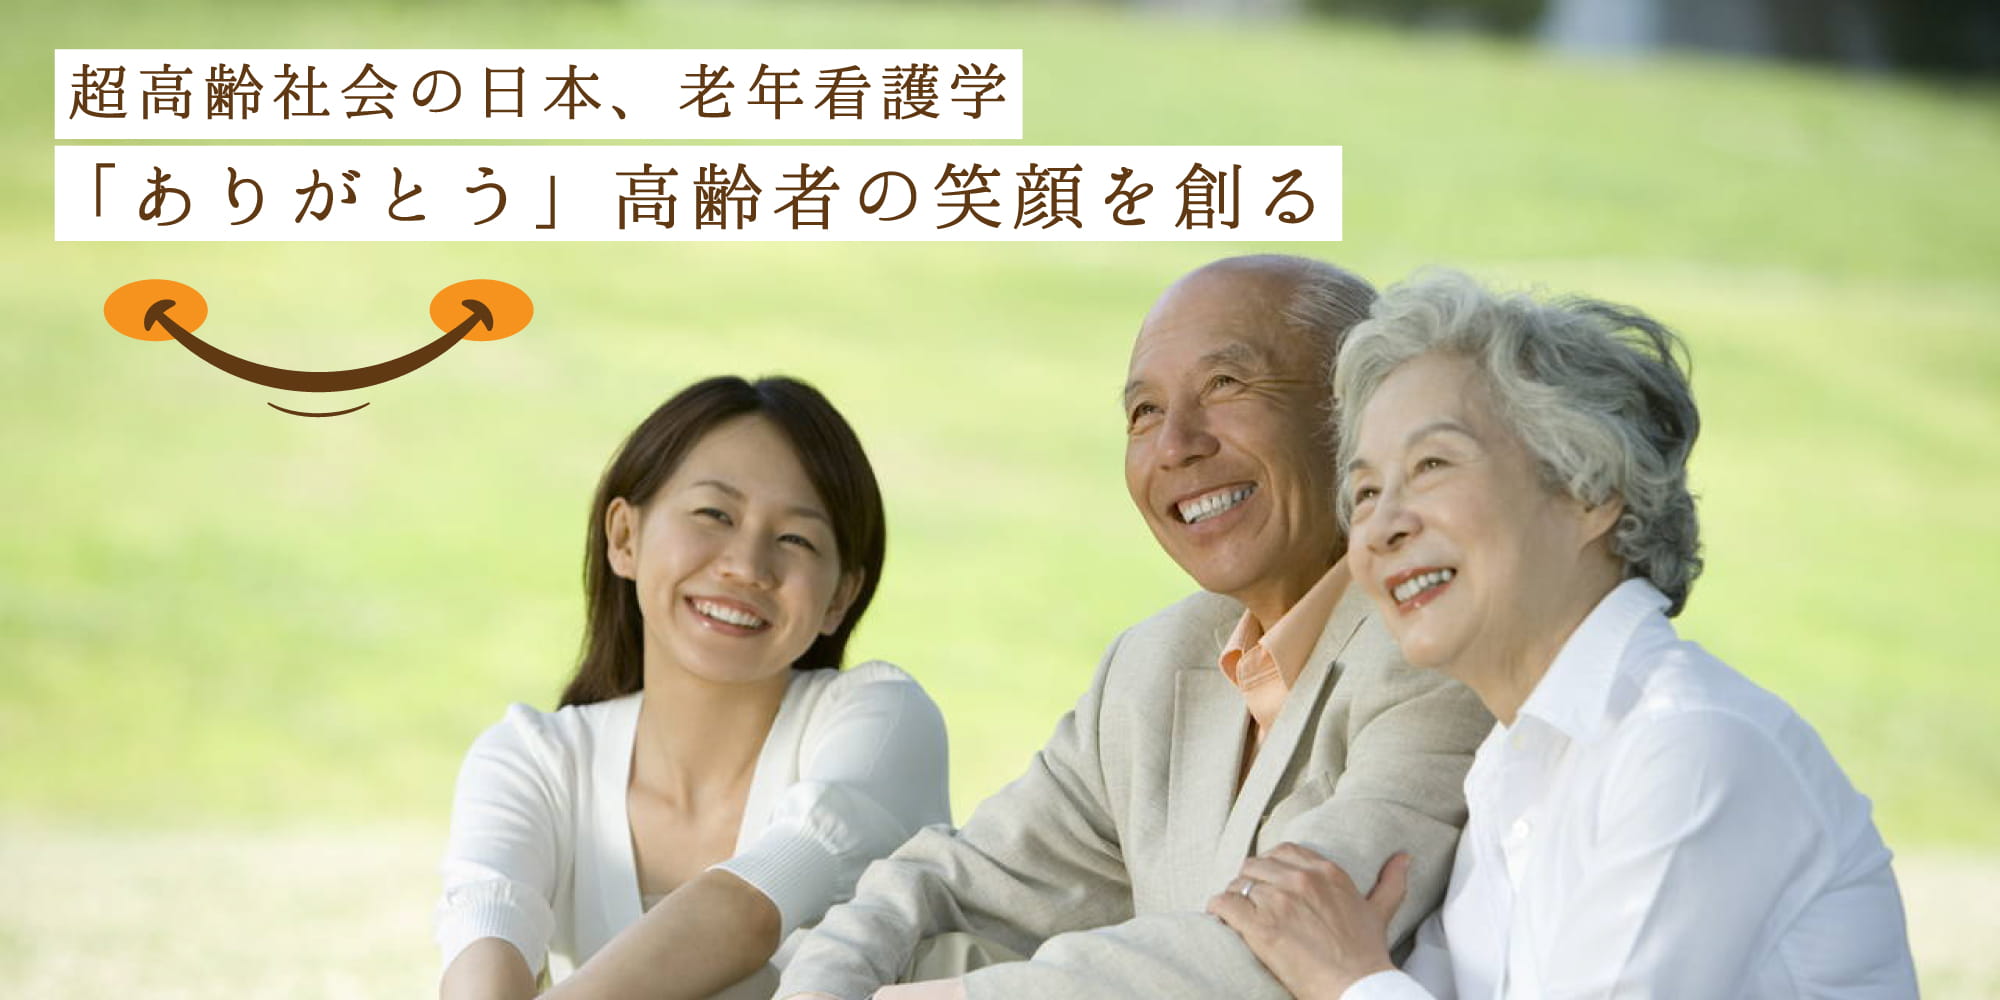 超高齢社会の日本、老年看護学「ありがとう」高齢者の笑顔を創る